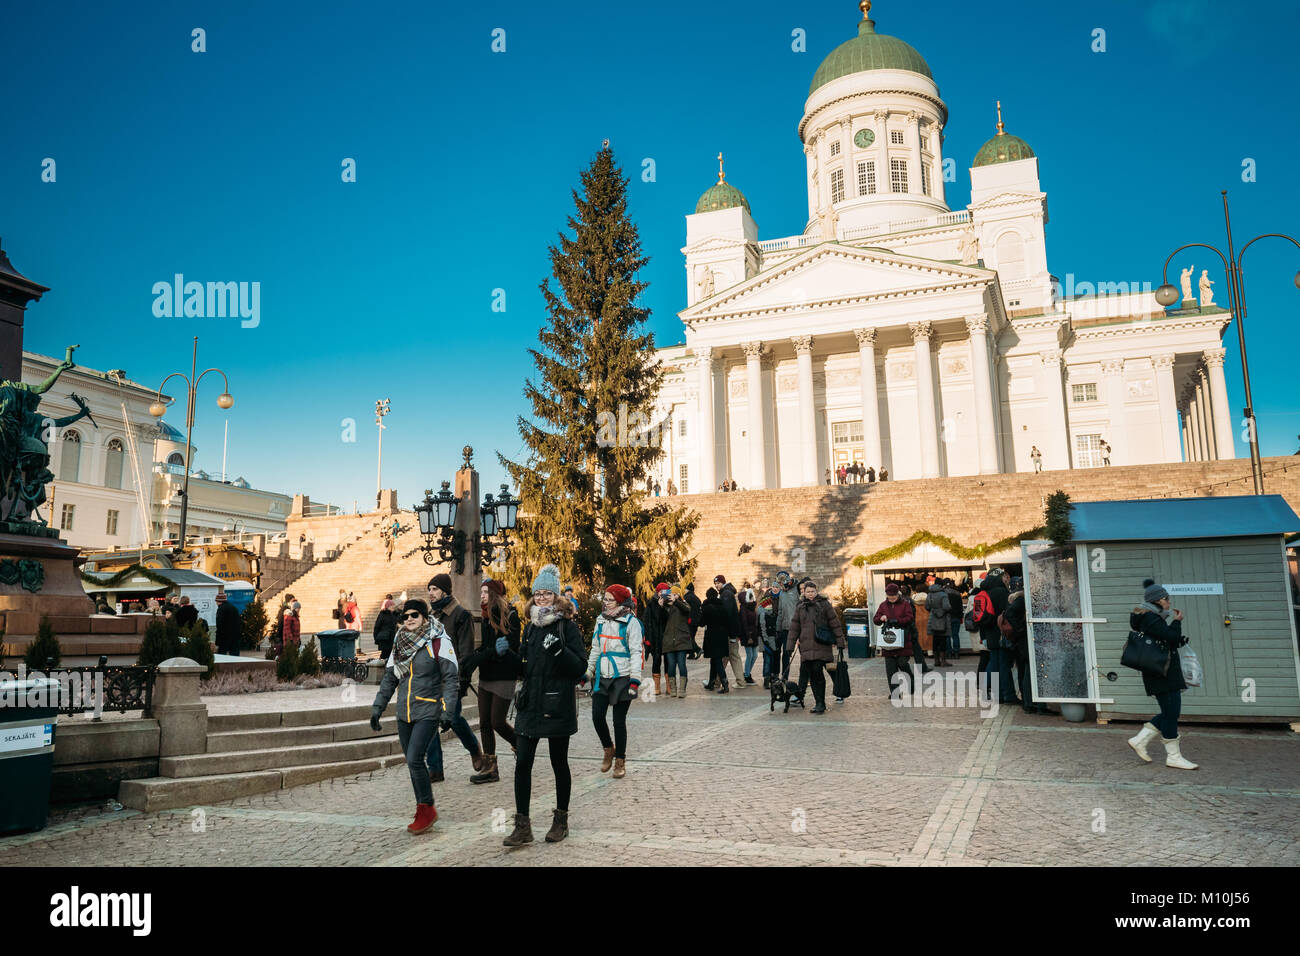 Helsinki, Finlandia - 11 de diciembre de 2016: Gente caminando cerca del árbol de Navidad en la Plaza del Senado con la famosa Catedral Luterana en el soleado día de invierno Foto de stock